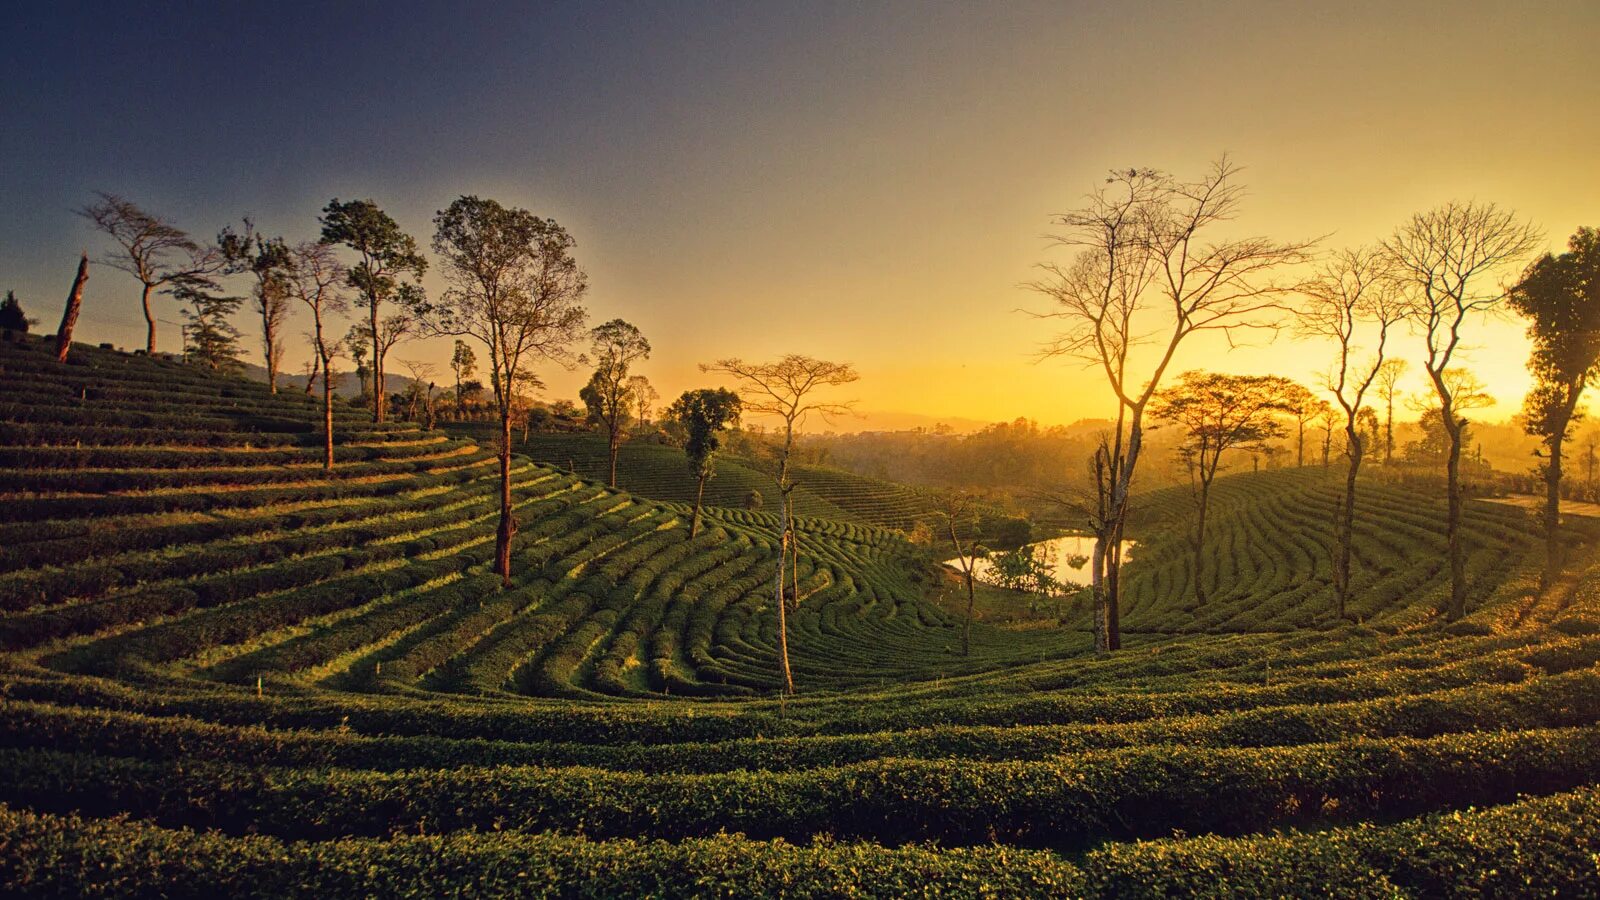 Шри ланка производство. Шри Ланка чайные плантации. Цейлонские плантации Шри Ланка. Чайные плантации Шри Ланки. Шри Ланка плантации чая.